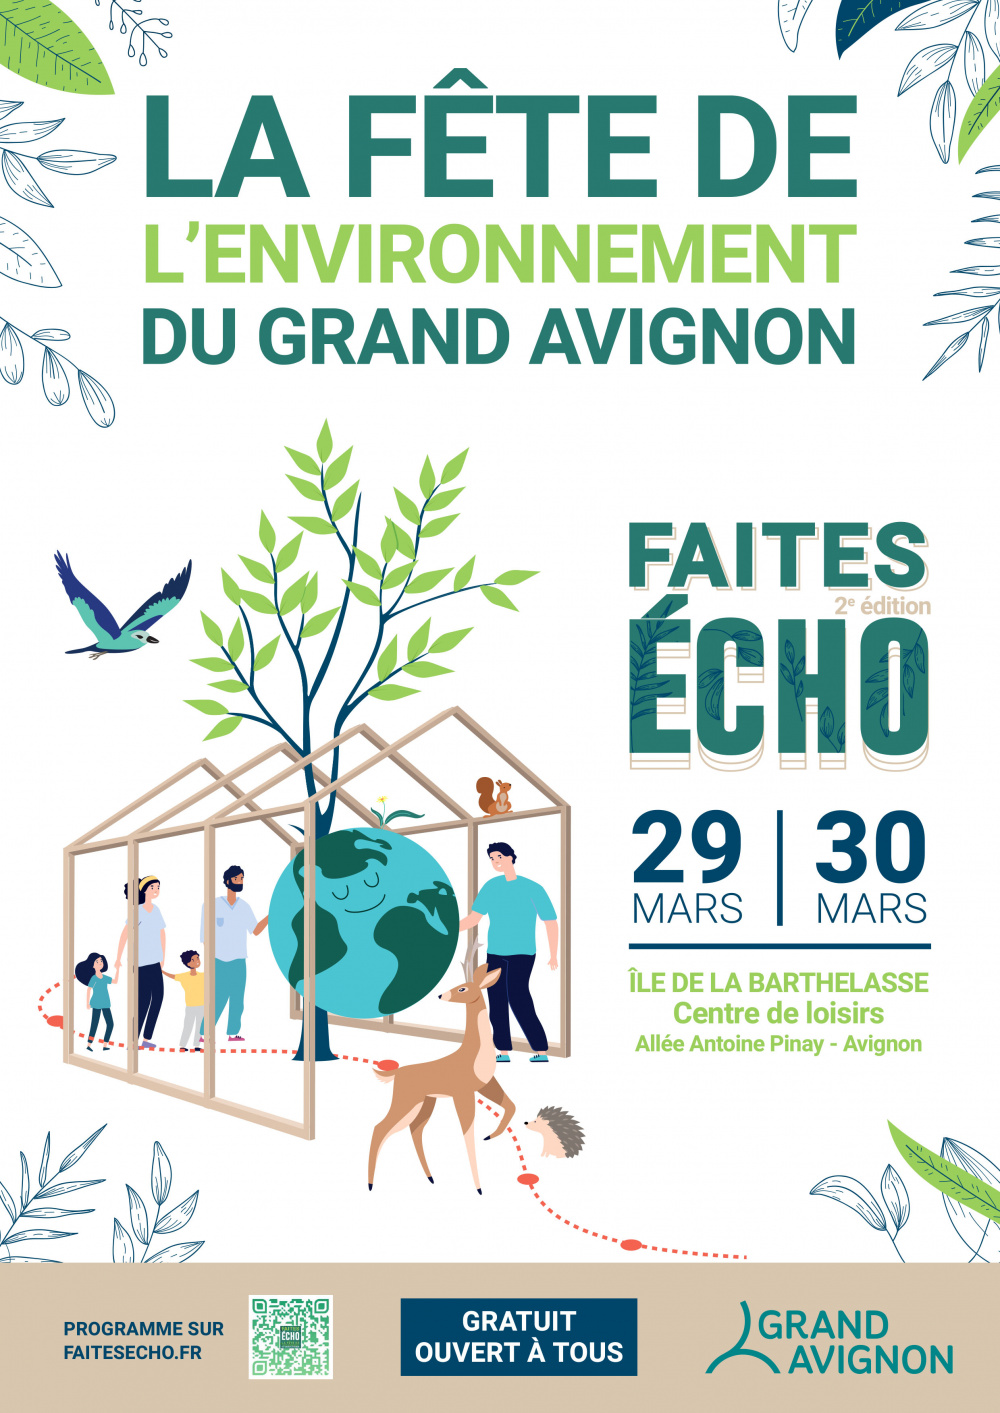 Faites écho 2ème édition - La fête de l'environnement du Grand Avignon